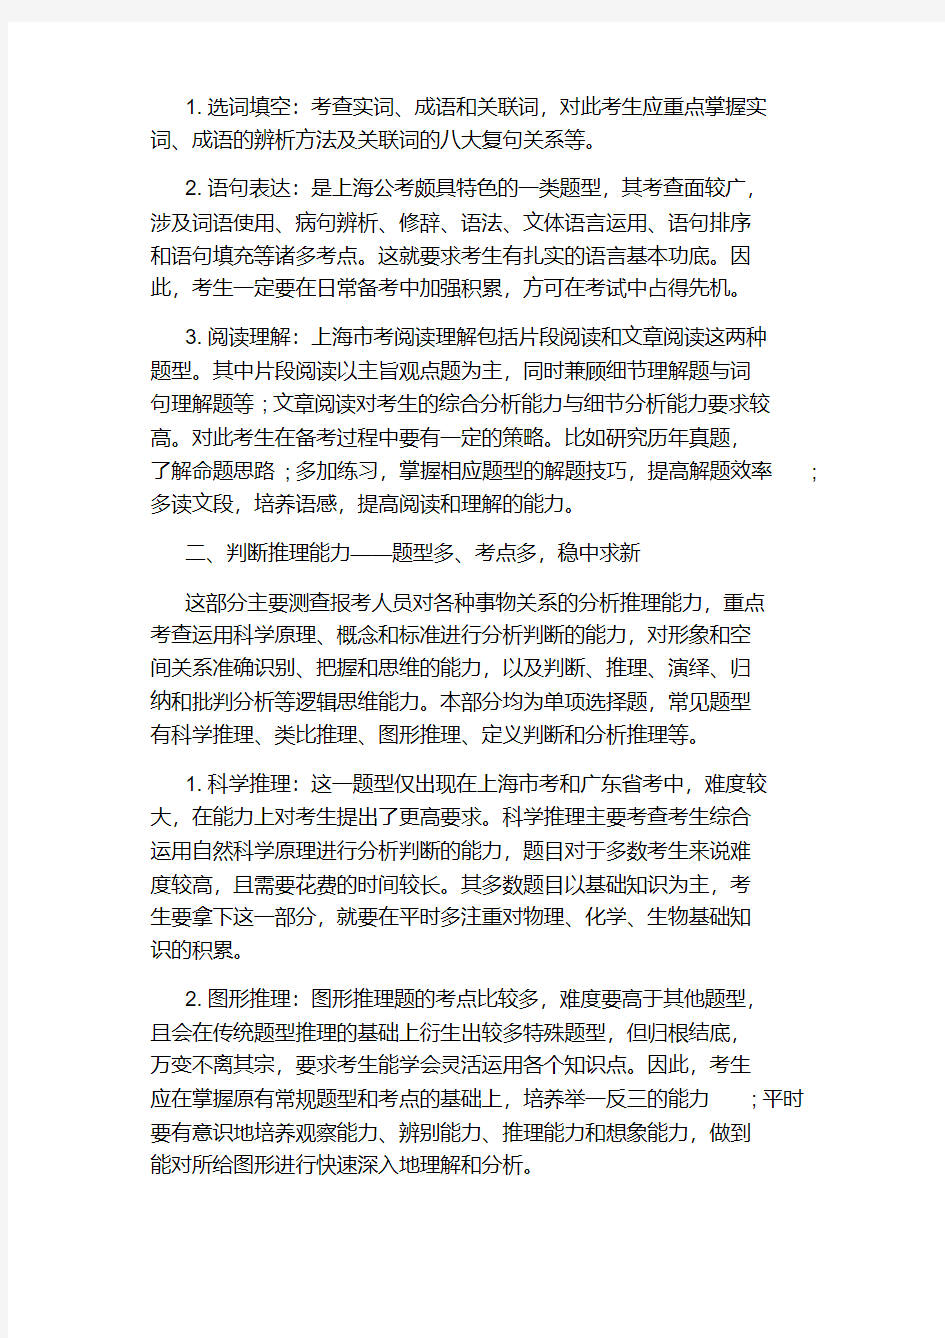 2020上海公务员考试行测大纲完整解析